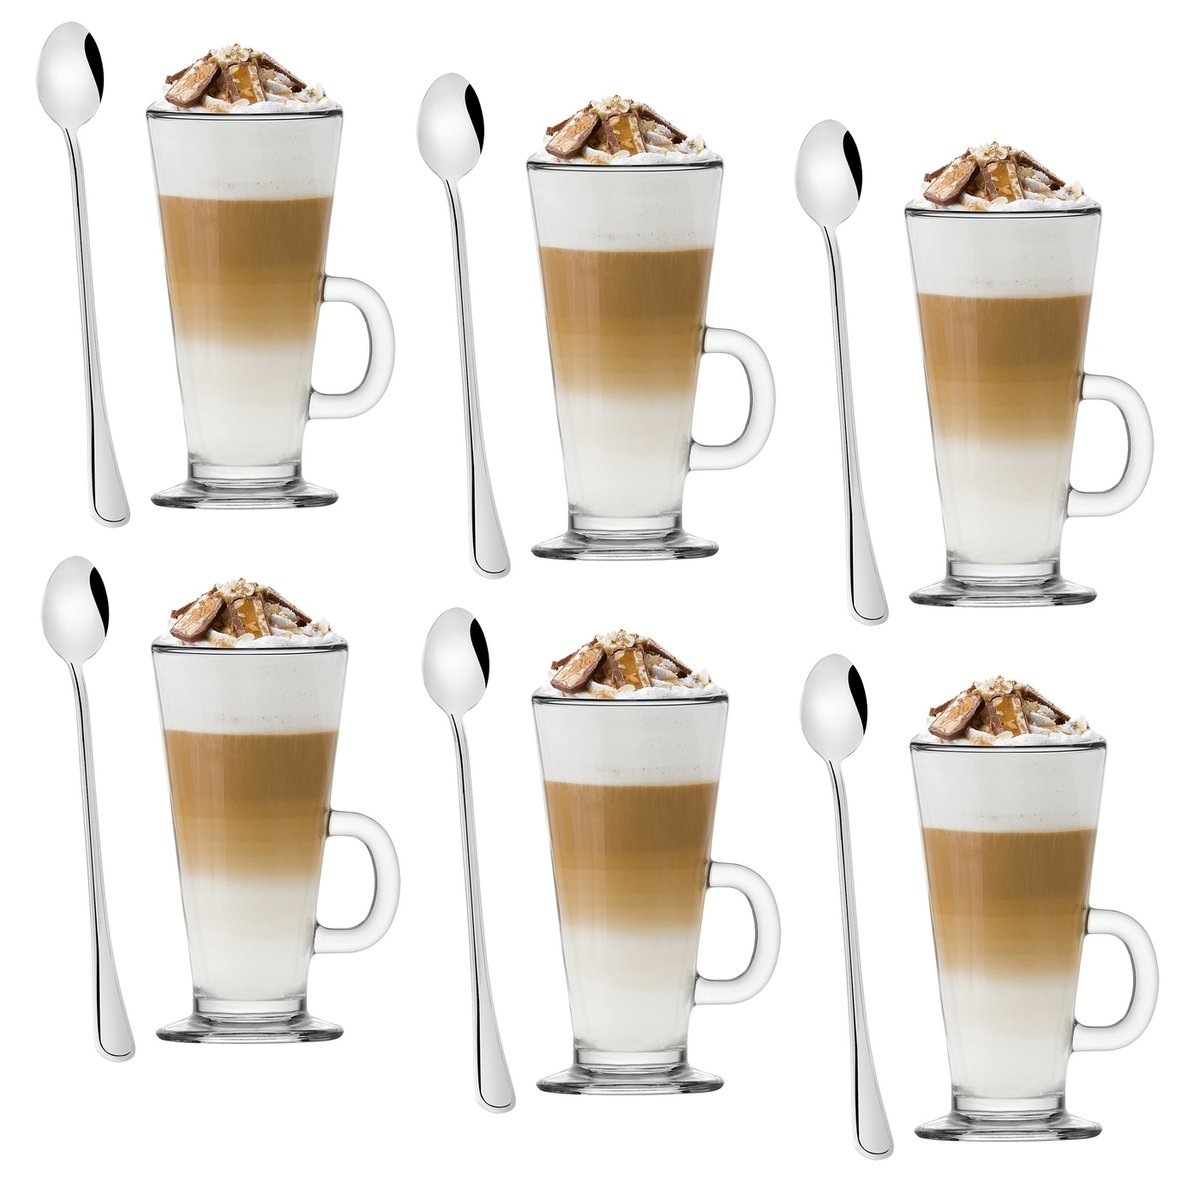 Komplet szklanek Tadar Caffe Latte 250 ml i 6 łyżeczek